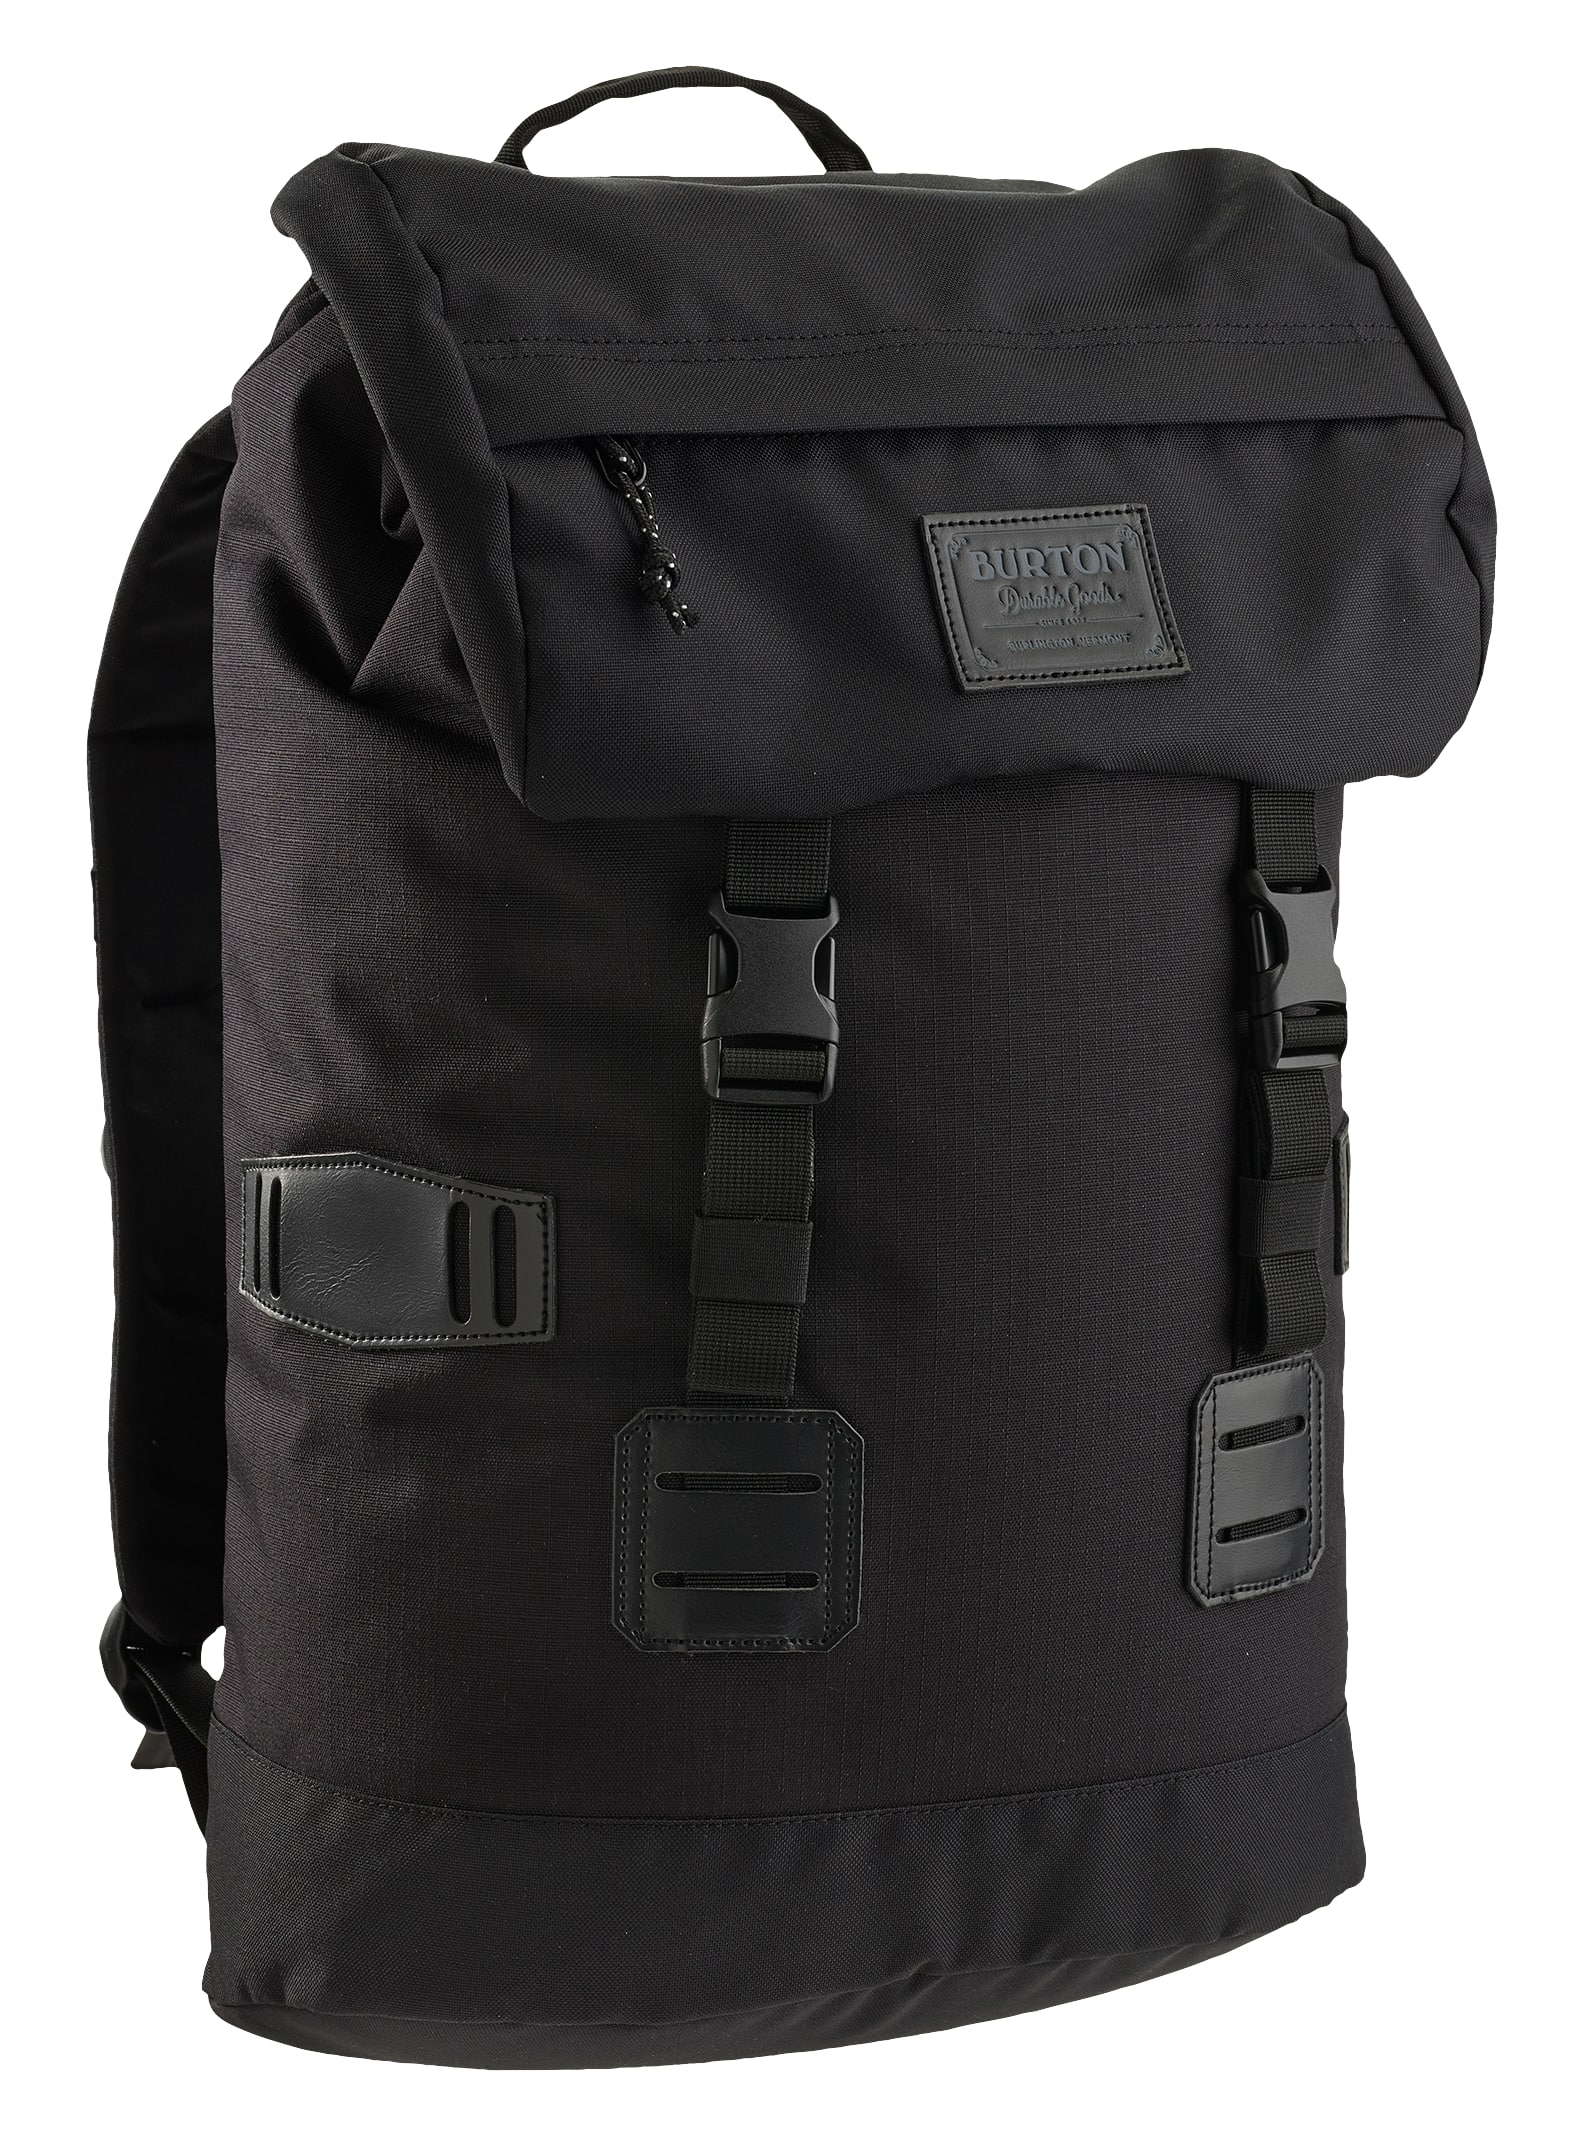 Burton / Tinder 25L Backpack